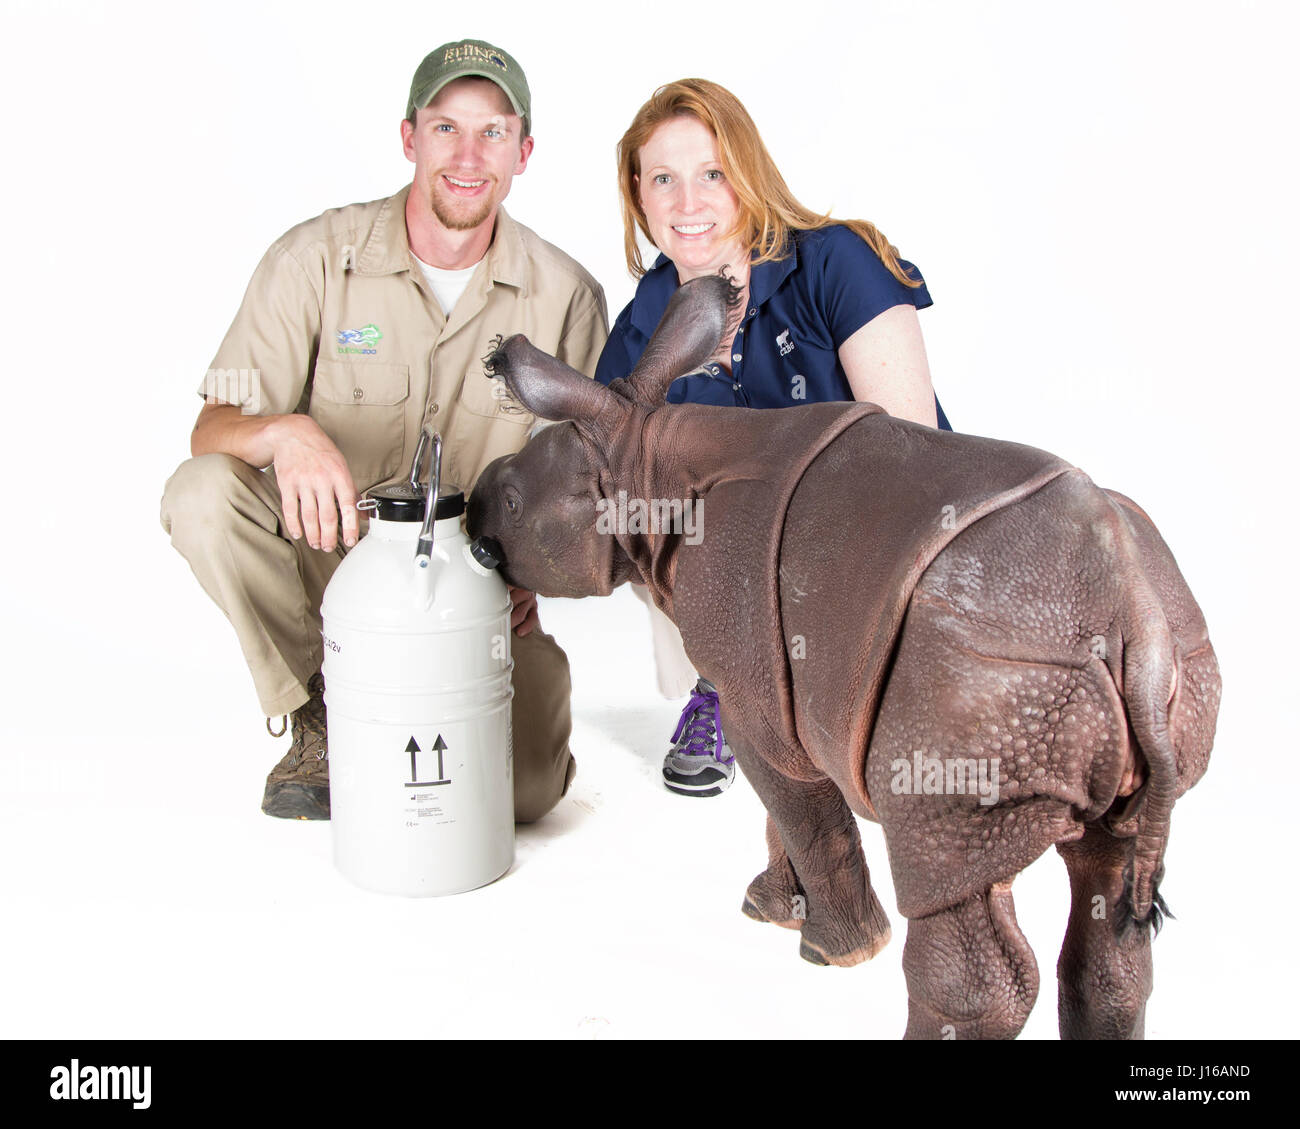 ZOO DE BUFFALO, USA : Zookeeper Joe Hauser et scientifique Dr Monica Monica à côté de fouineurs posent le bébé rhino et une unité d'insémination artificielle. Le premier rhino tube de test dont le père est mort il y a dix ans est un vrai cutie. Cette femme âgée de deux semaines rhinocéros indien le père de veau "Jimmy" est mort en 2004 et le bébé rhino Monica était seul né grâce à l'être du sperme congelé et utilisé pour féconder sa mère. Le personnel du zoo de Buffalo aux États-Unis a réussi à utiliser les techniques de l'insémination artificielle pour amener un plus de cette espèce rare dans le monde. Seulement 2 500 rhinocéros Indien restent vivants dans la nature. Tashi mère Banque D'Images